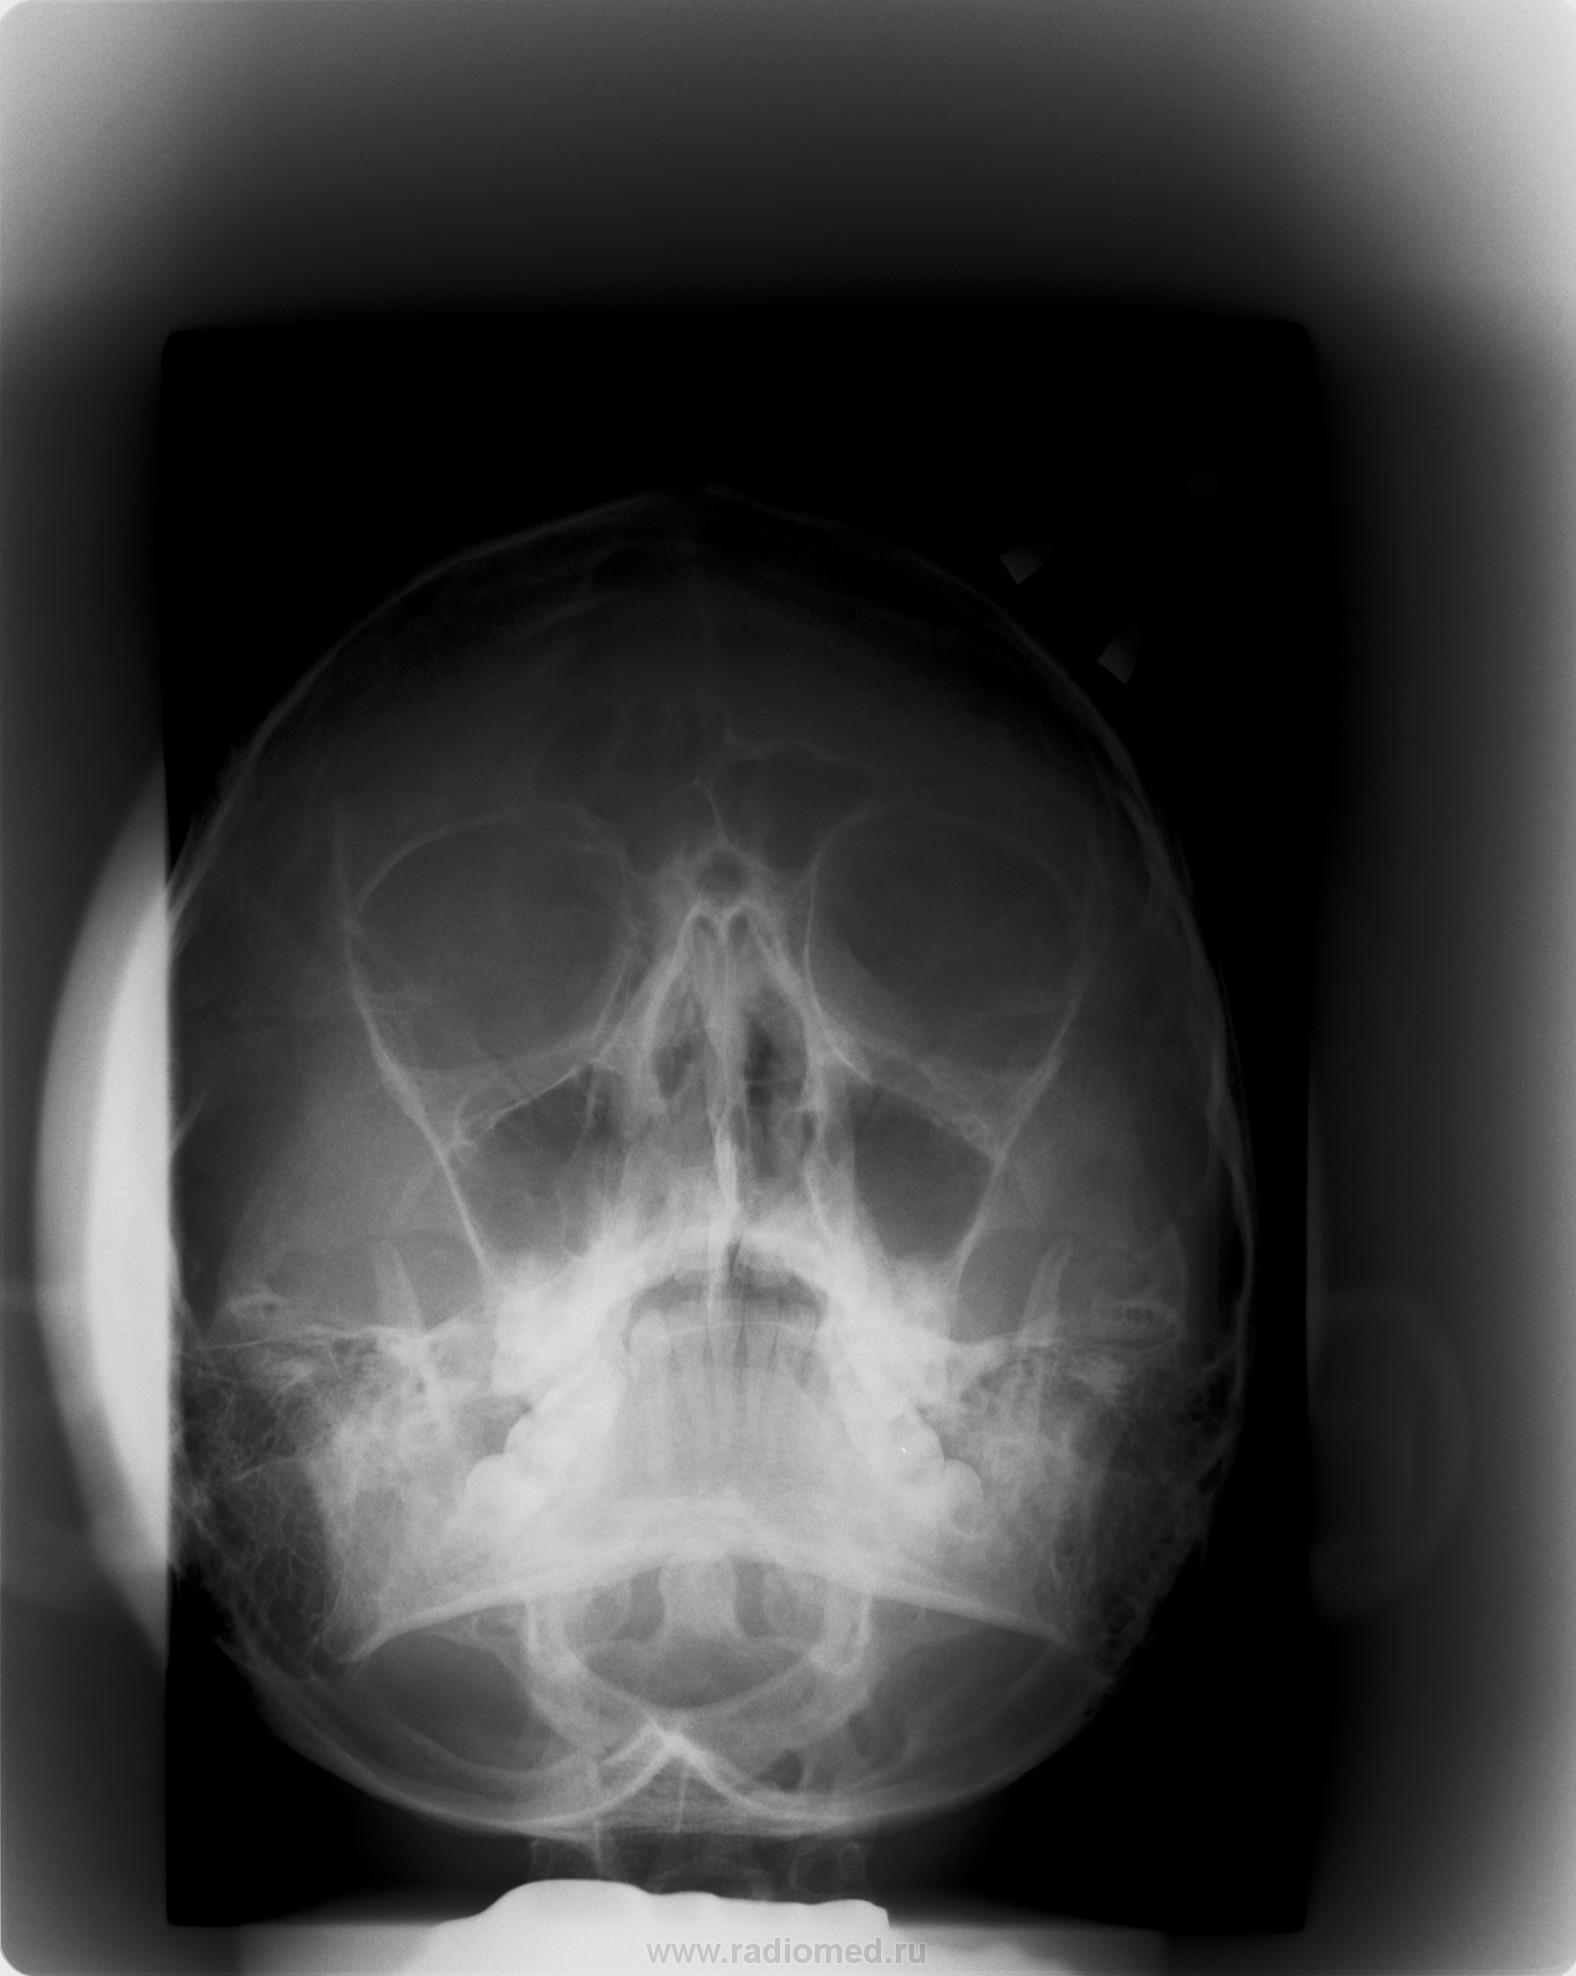 При укладке черепа в прямой проекции центральный луч направлен к доске стола